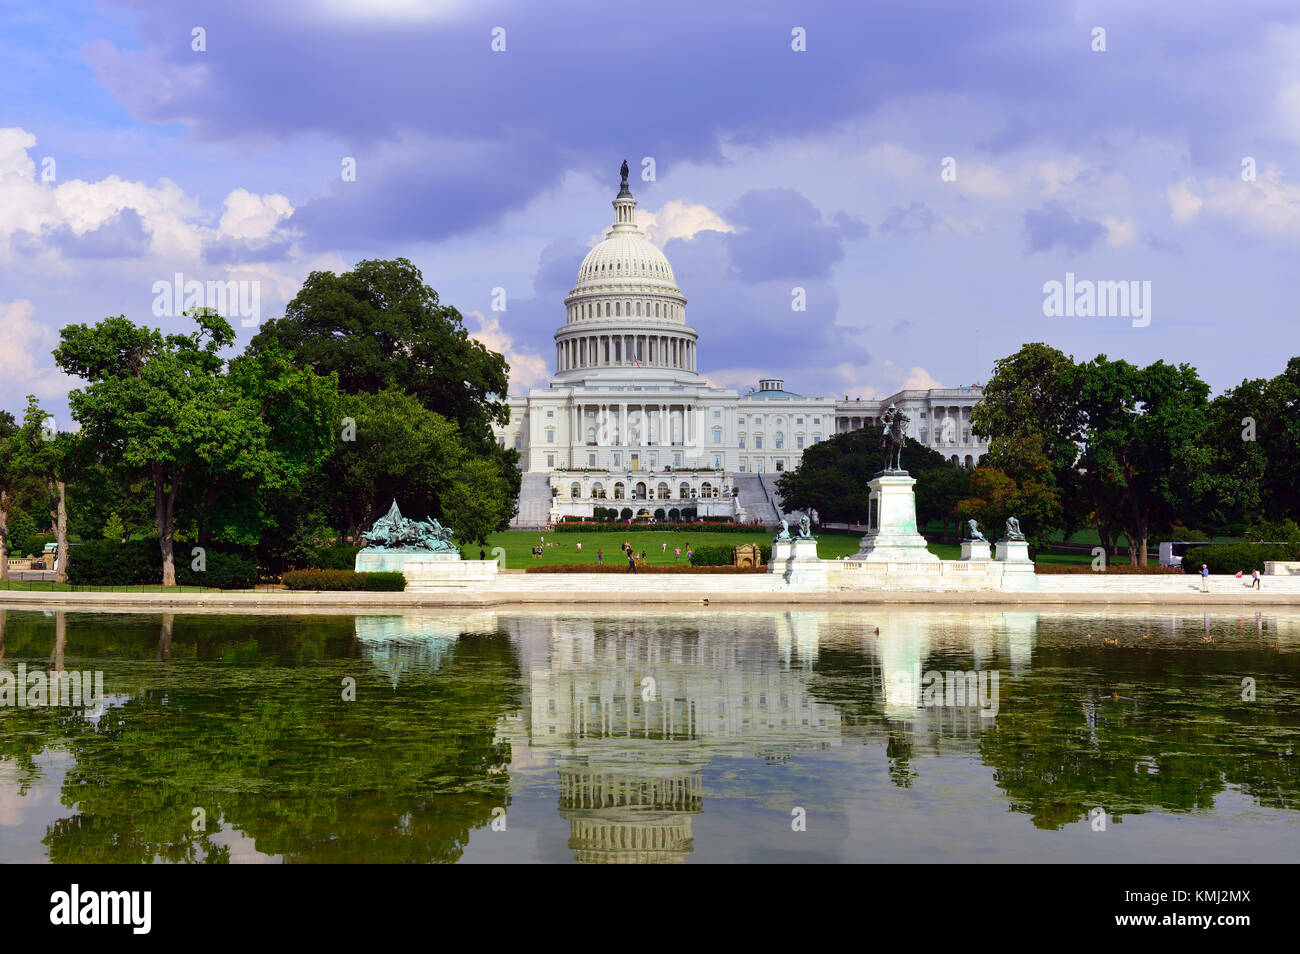 Kongress Gebäude in Capitol Hill, Washington Dc mit stürmischen Himmel und Wasser Reflexionen. Stockfoto